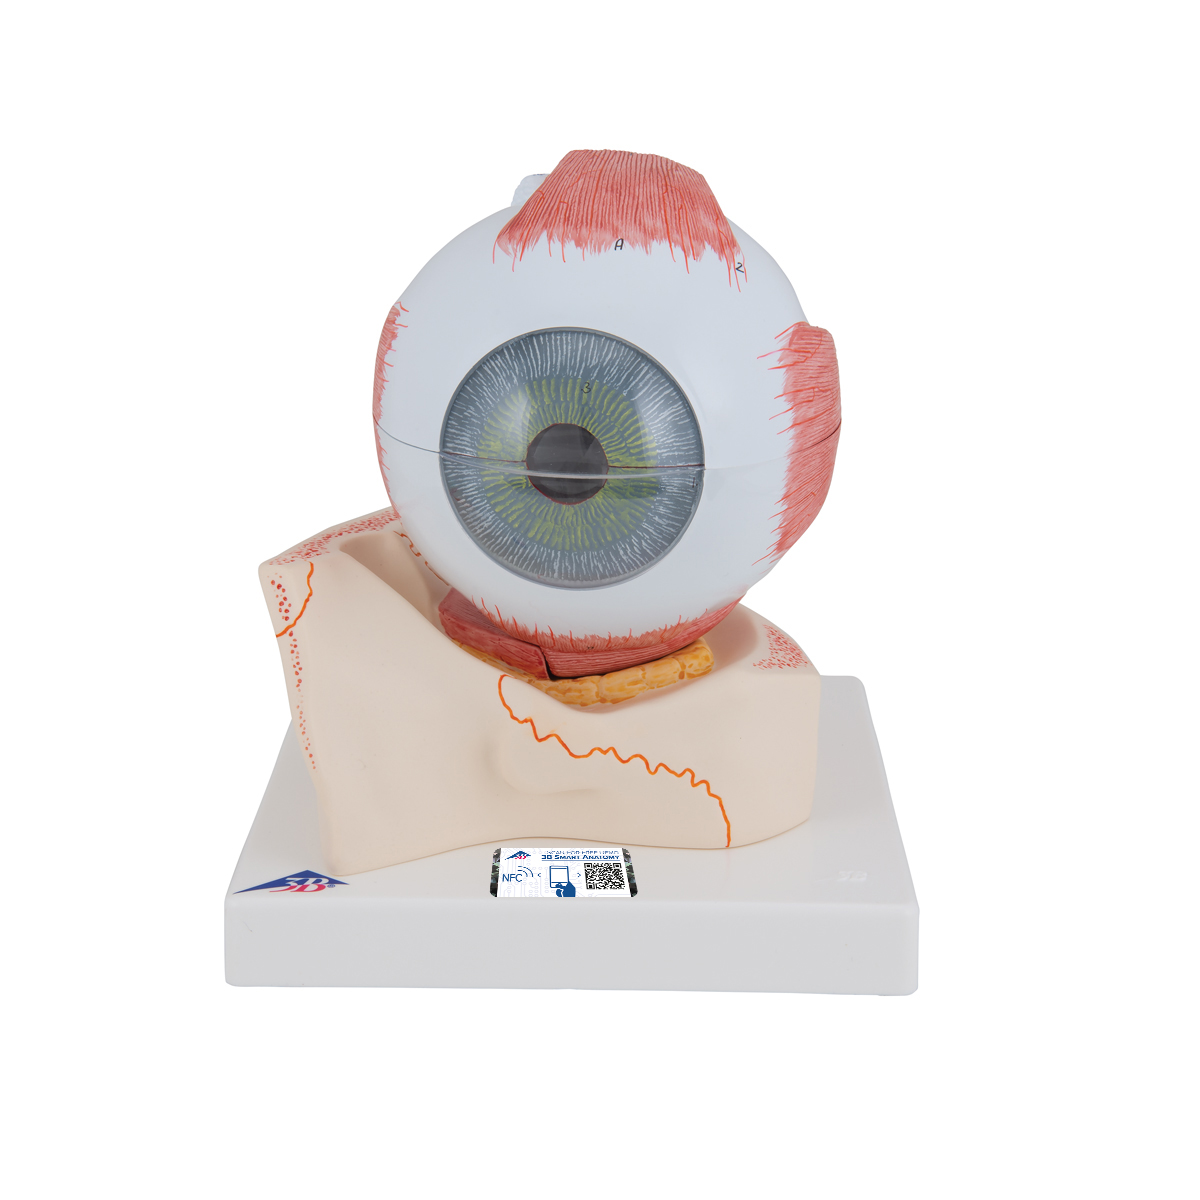 Augenmodell, 5-fache Größe, 7-teilig - 3B Smart Anatomy, Bestellnummer 1000256, F11, 3B Scientific